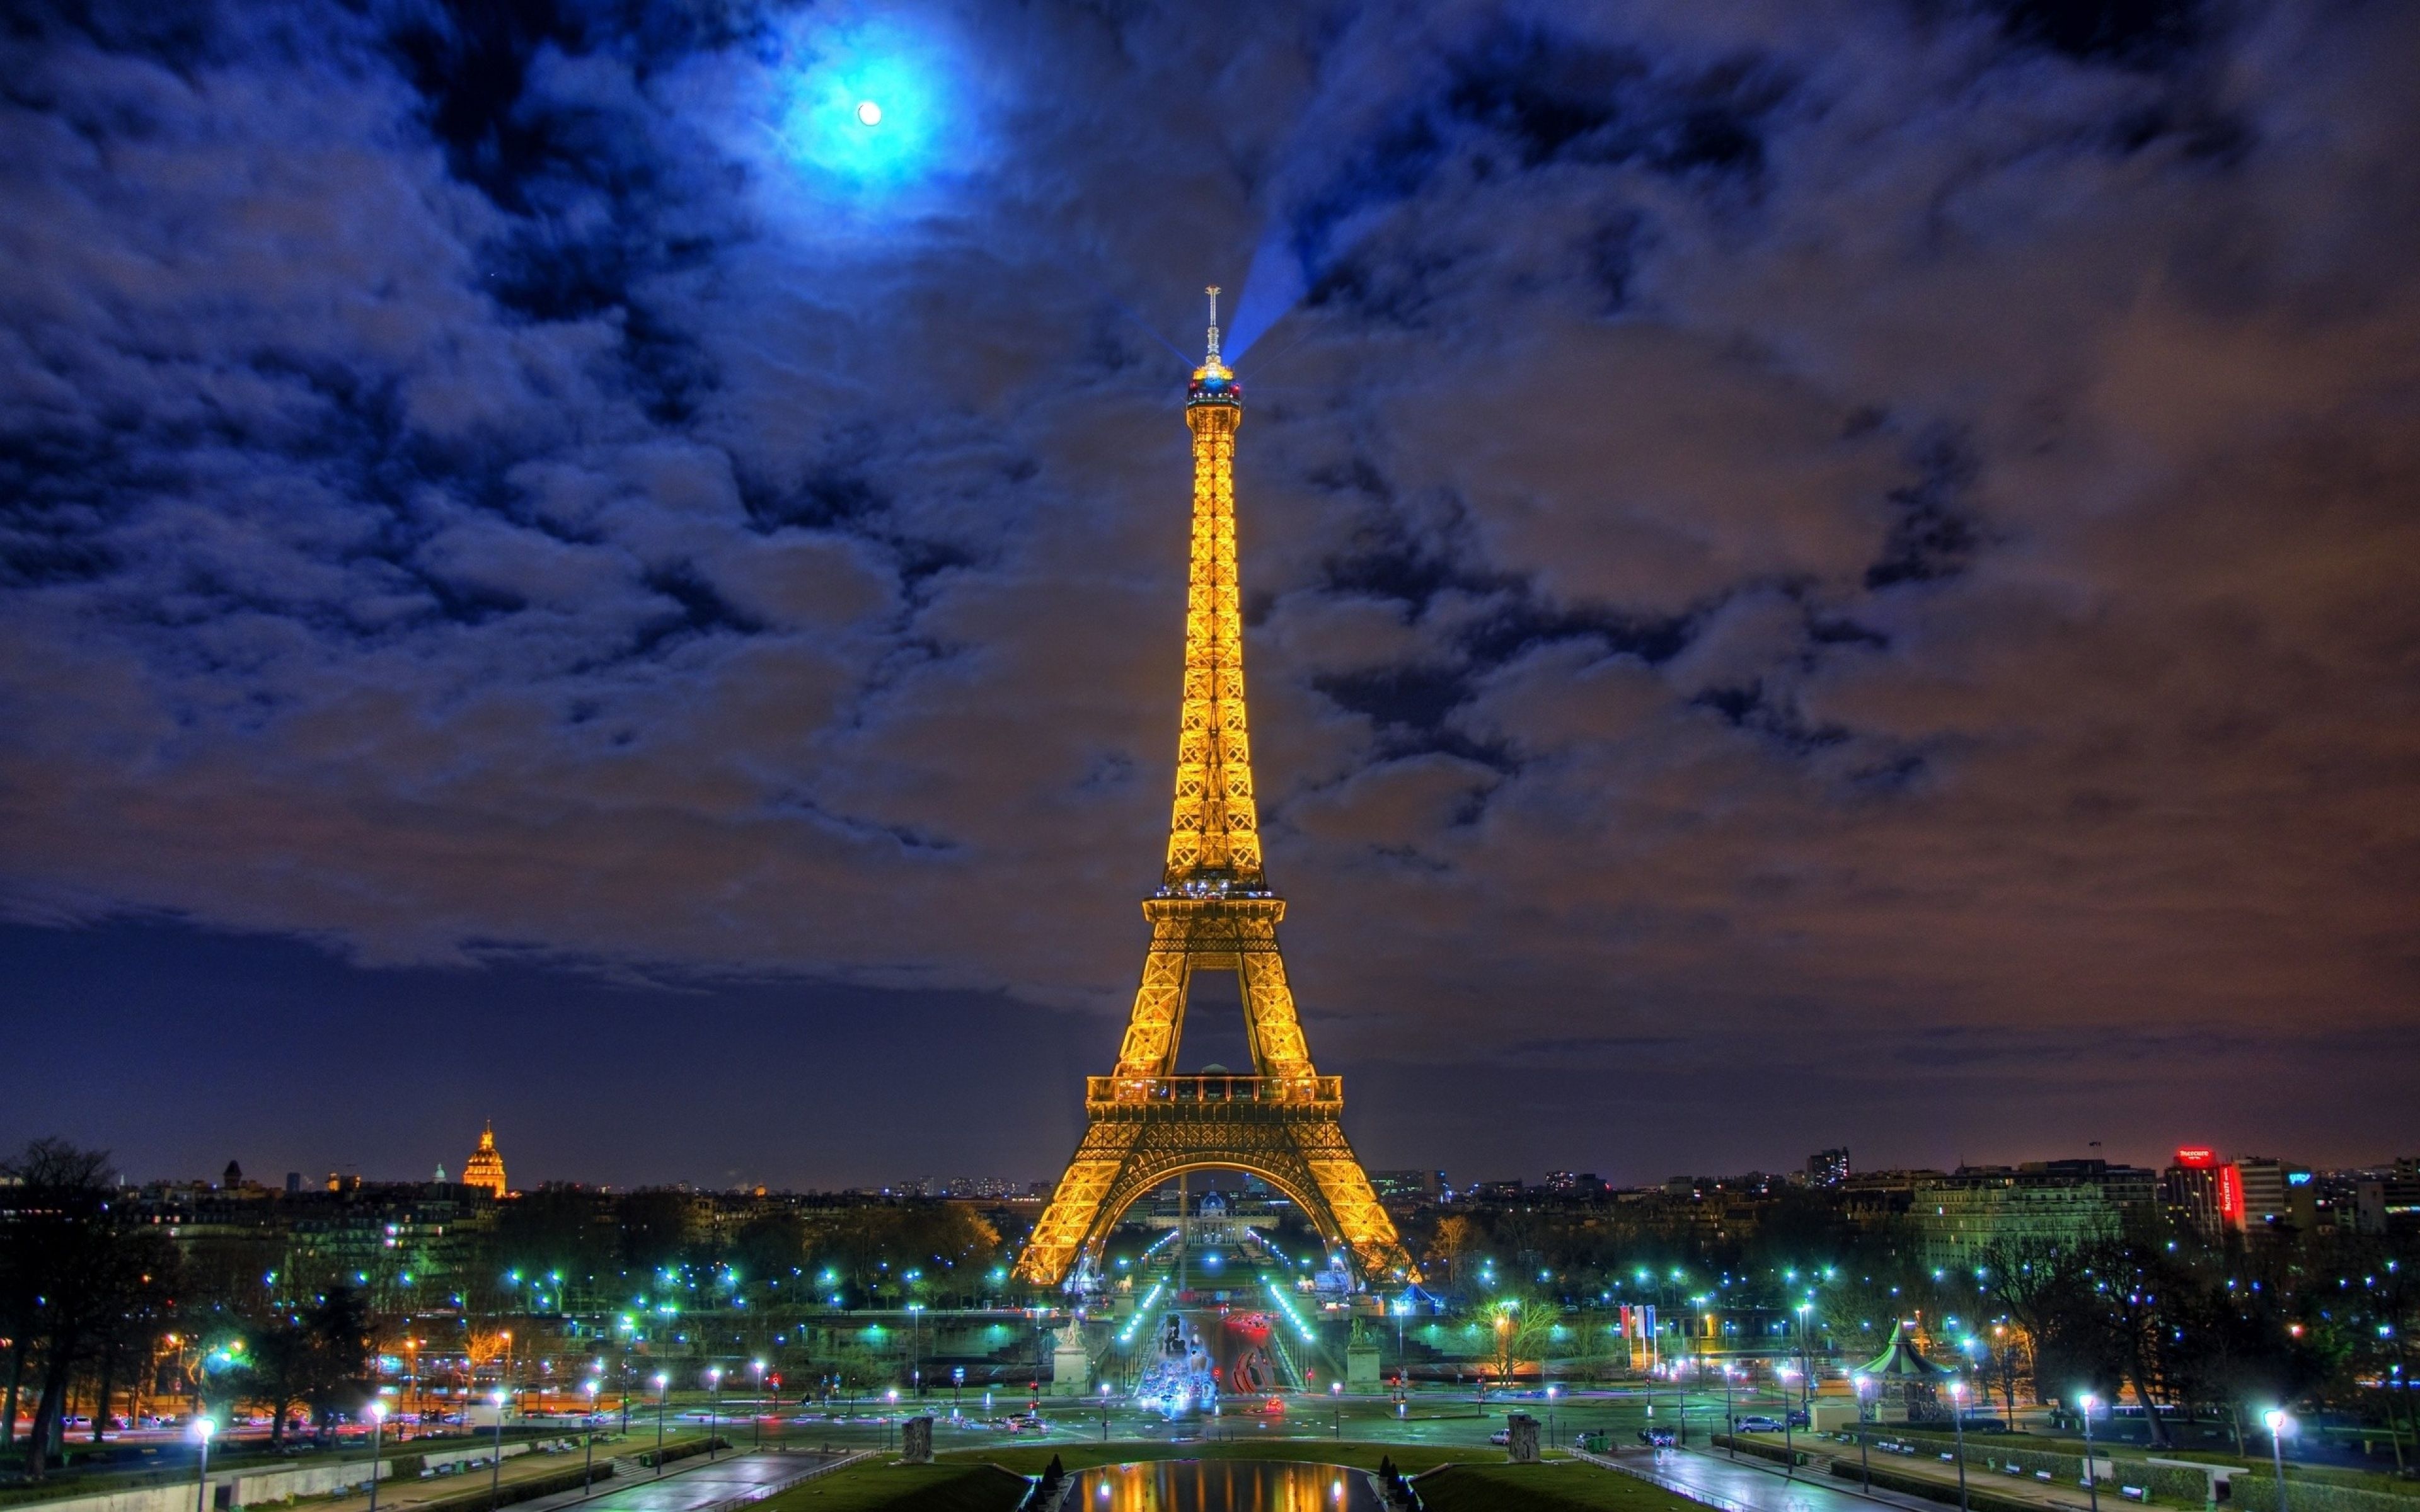 Eiffel Tower 4K Wallpapers - 4k, HD Eiffel Tower 4K Backgrounds on ...